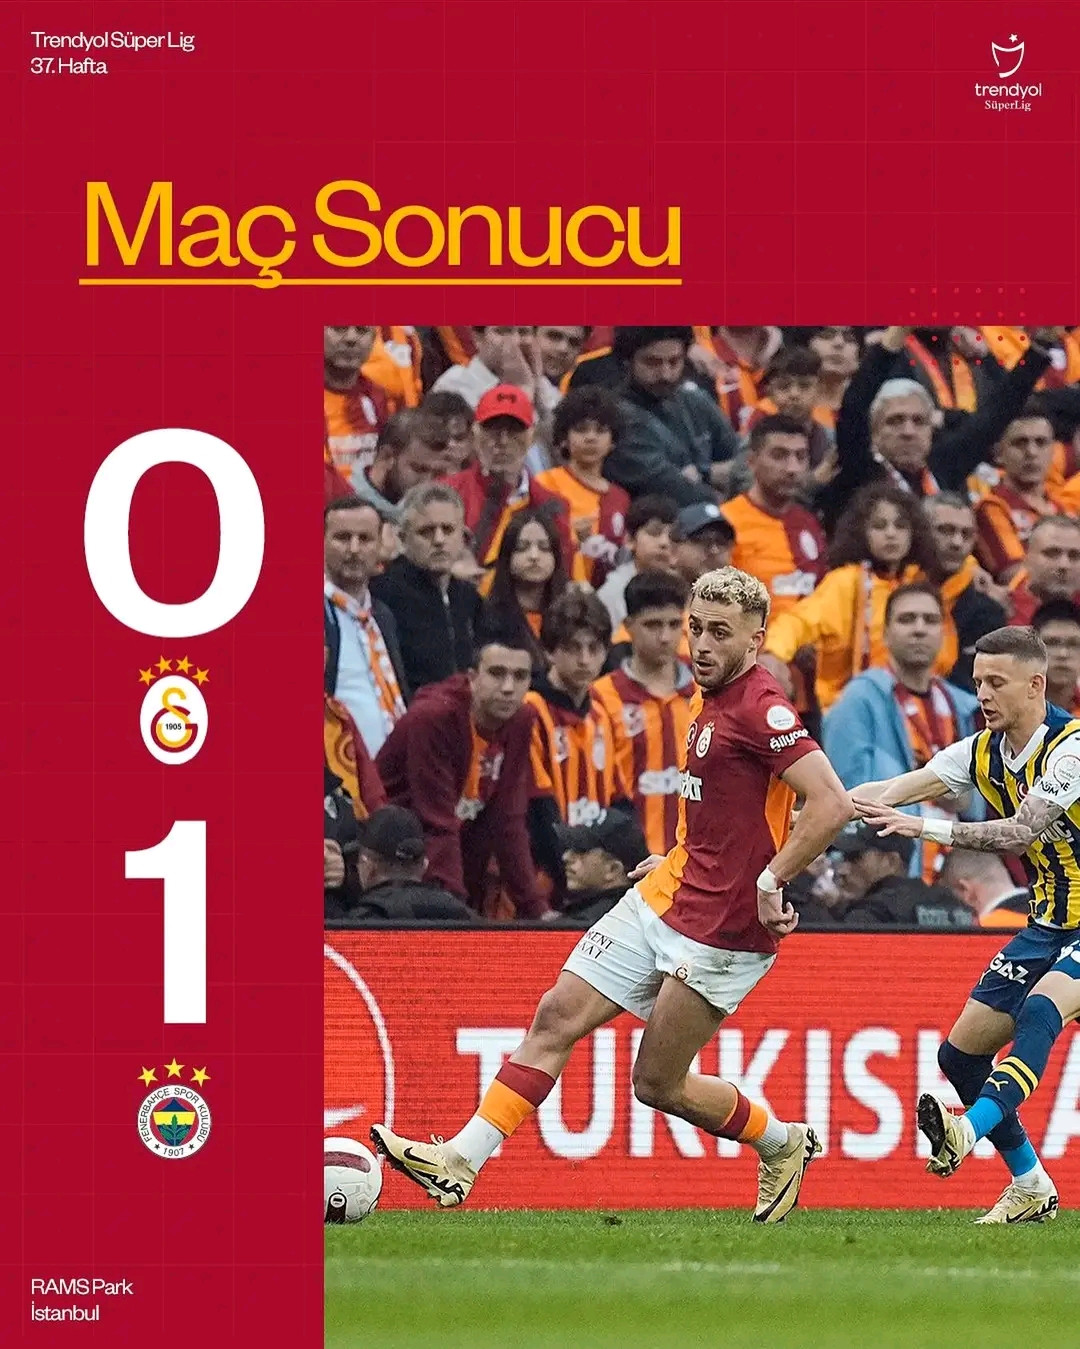 El Fenerbahçe sorprende al Galatasaray en el derbi